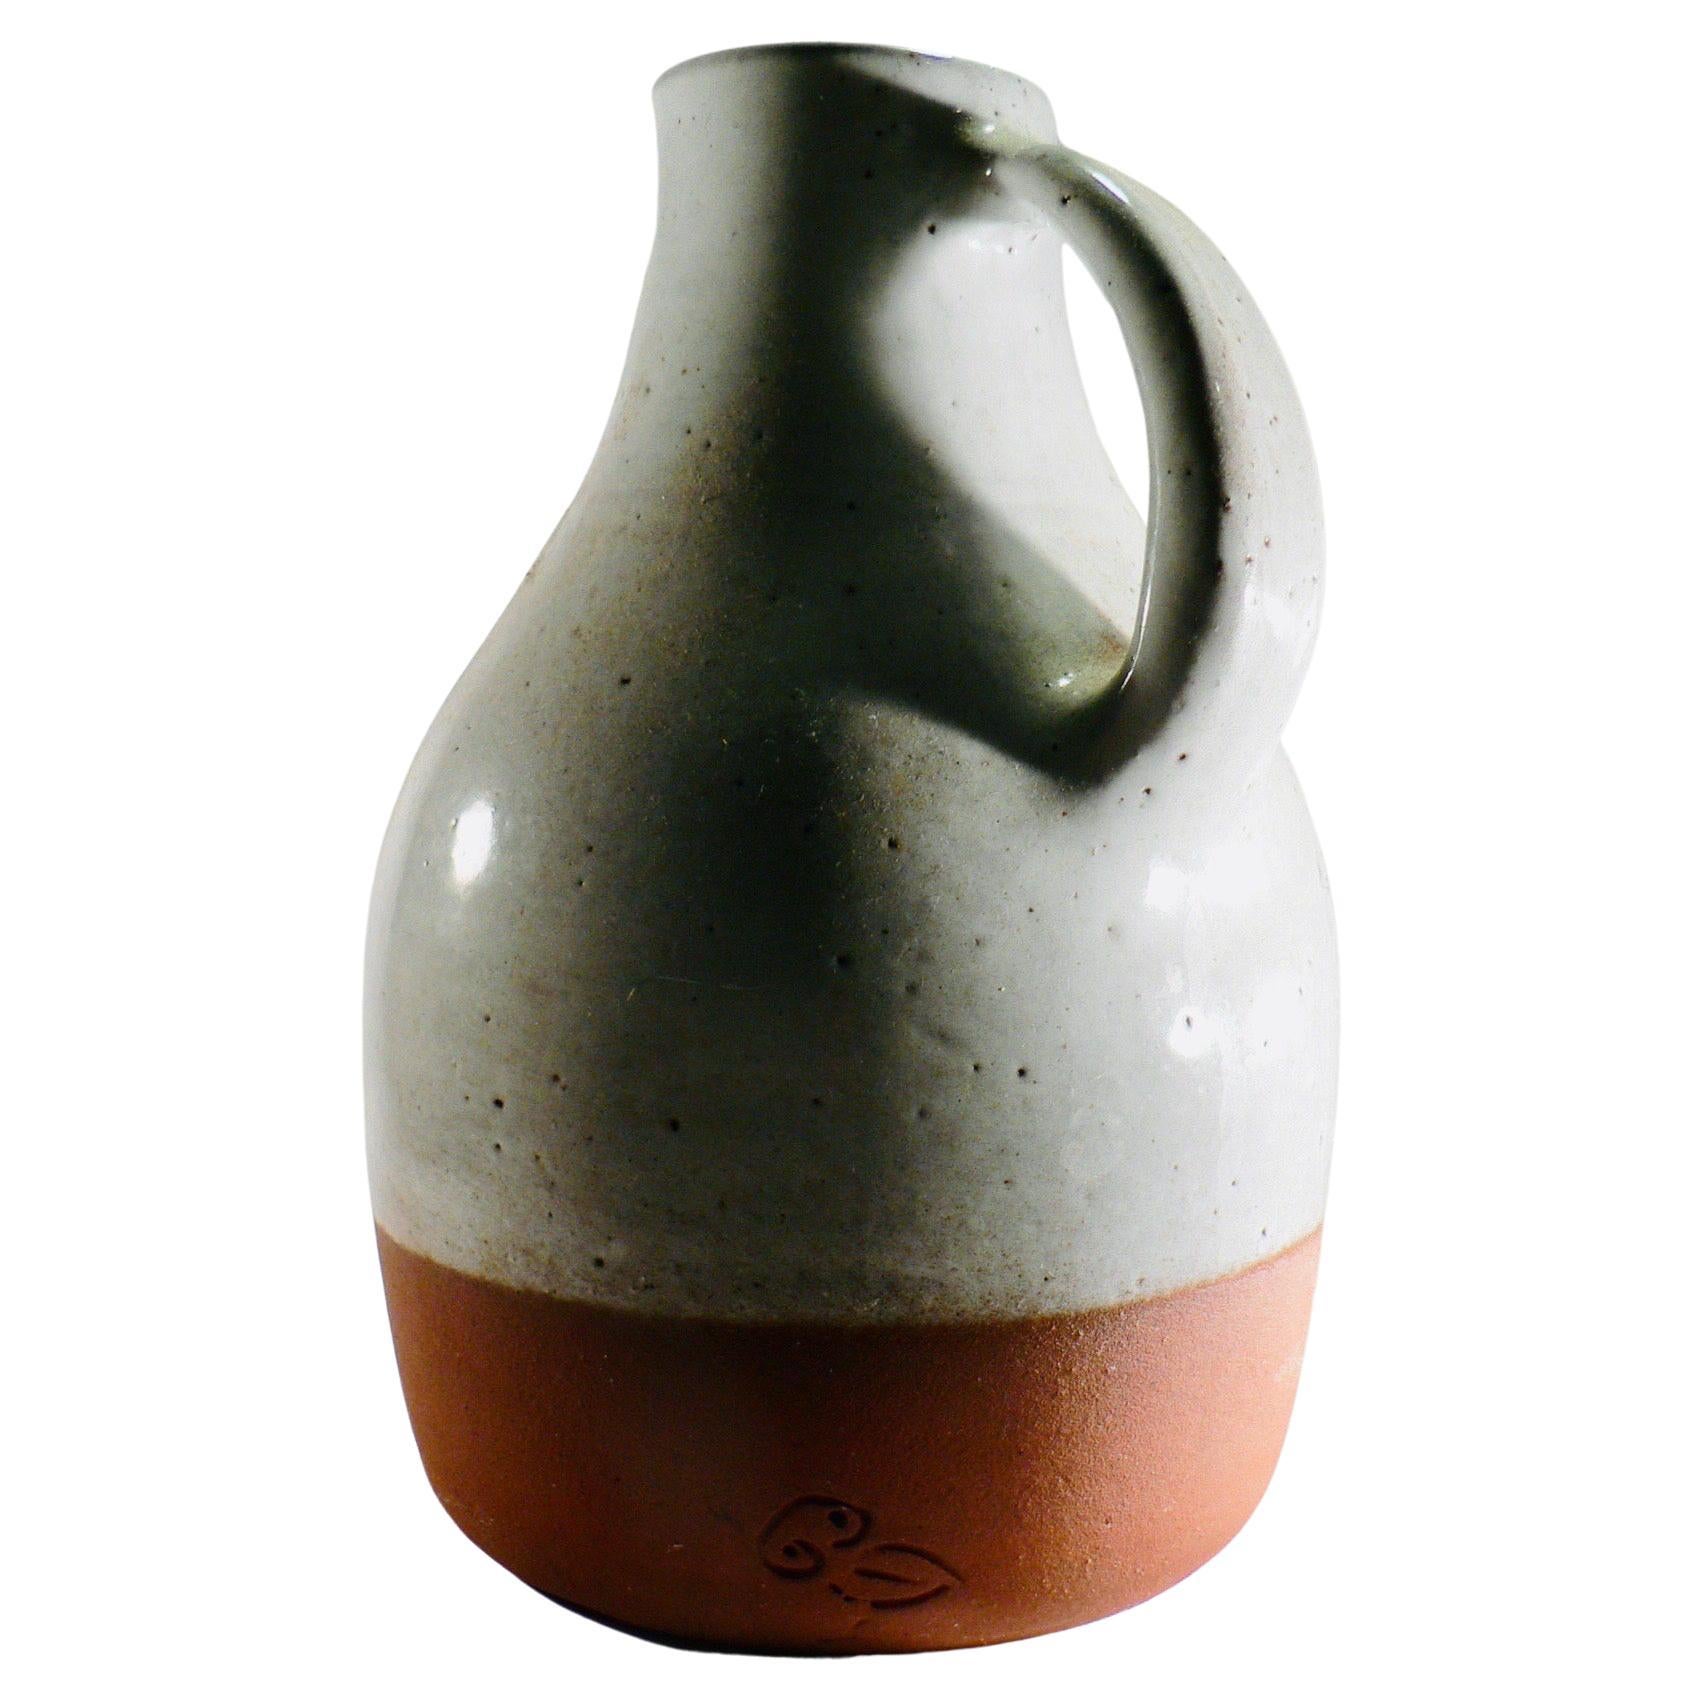 Ein Krug aus glasierter Keramik – Jeanne und Norbert Pierlot – Frankreich – 1960er Jahre.